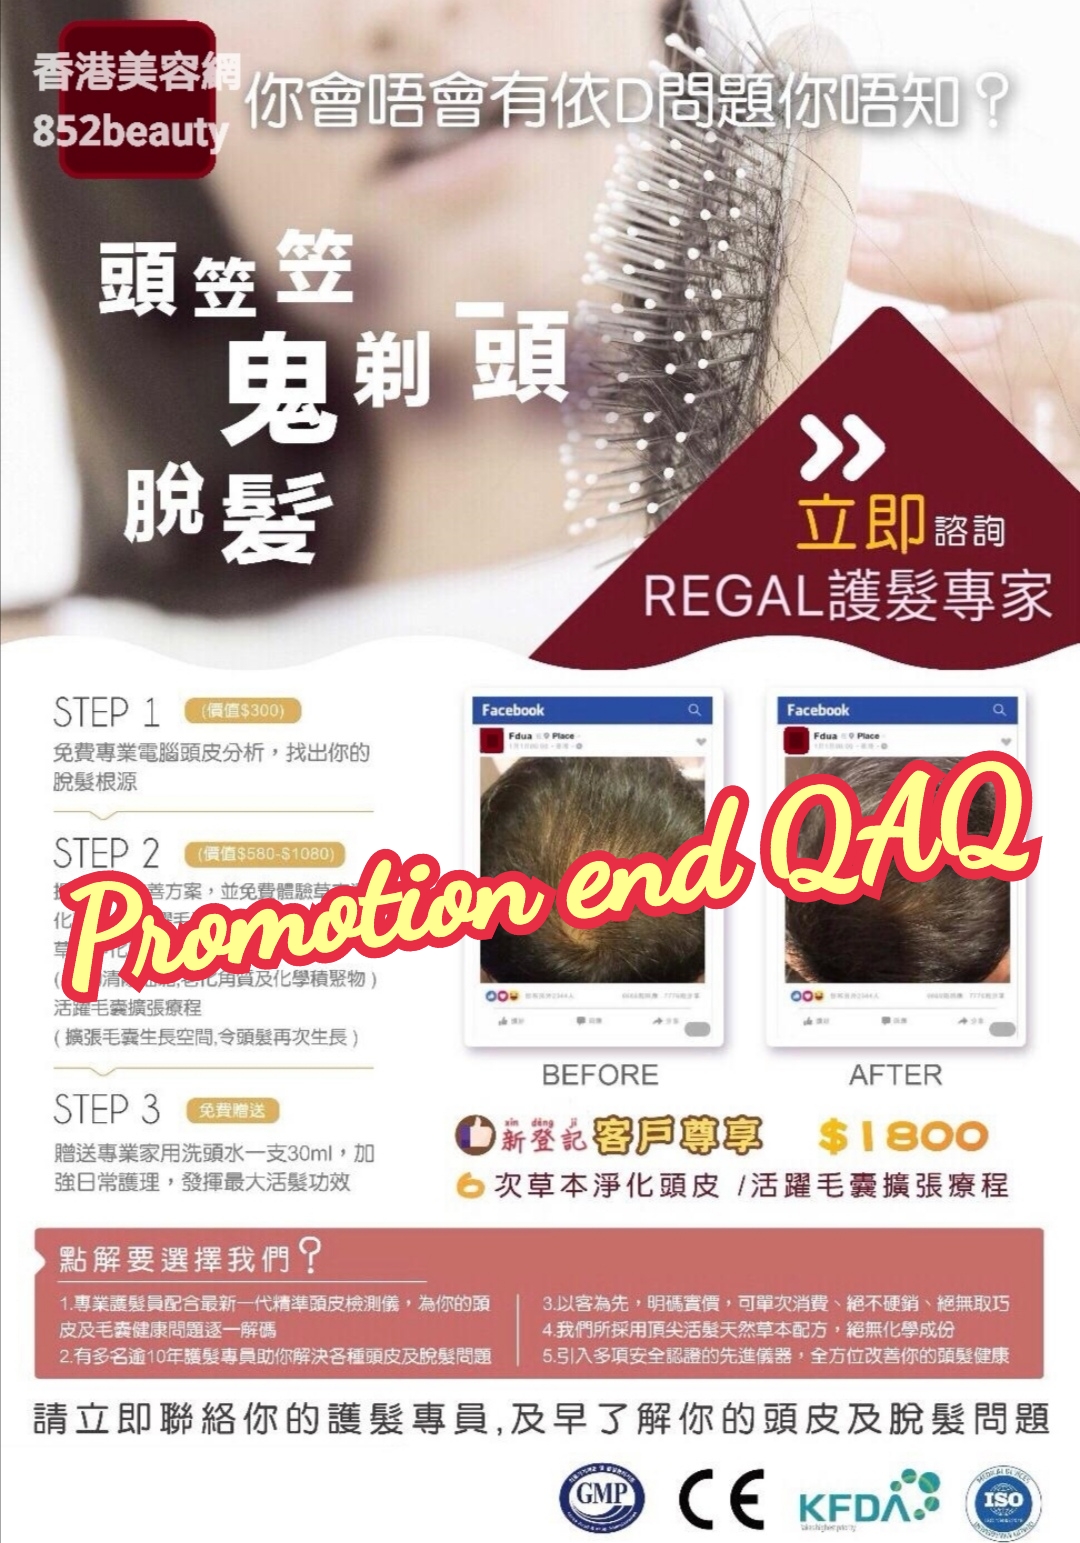 Hong Kong Beauty Salon Latest Beauty Discount: 美容優惠 - 尖沙咀區] 脫髮救星 ! 活髮有辦法 !!  (已結束)